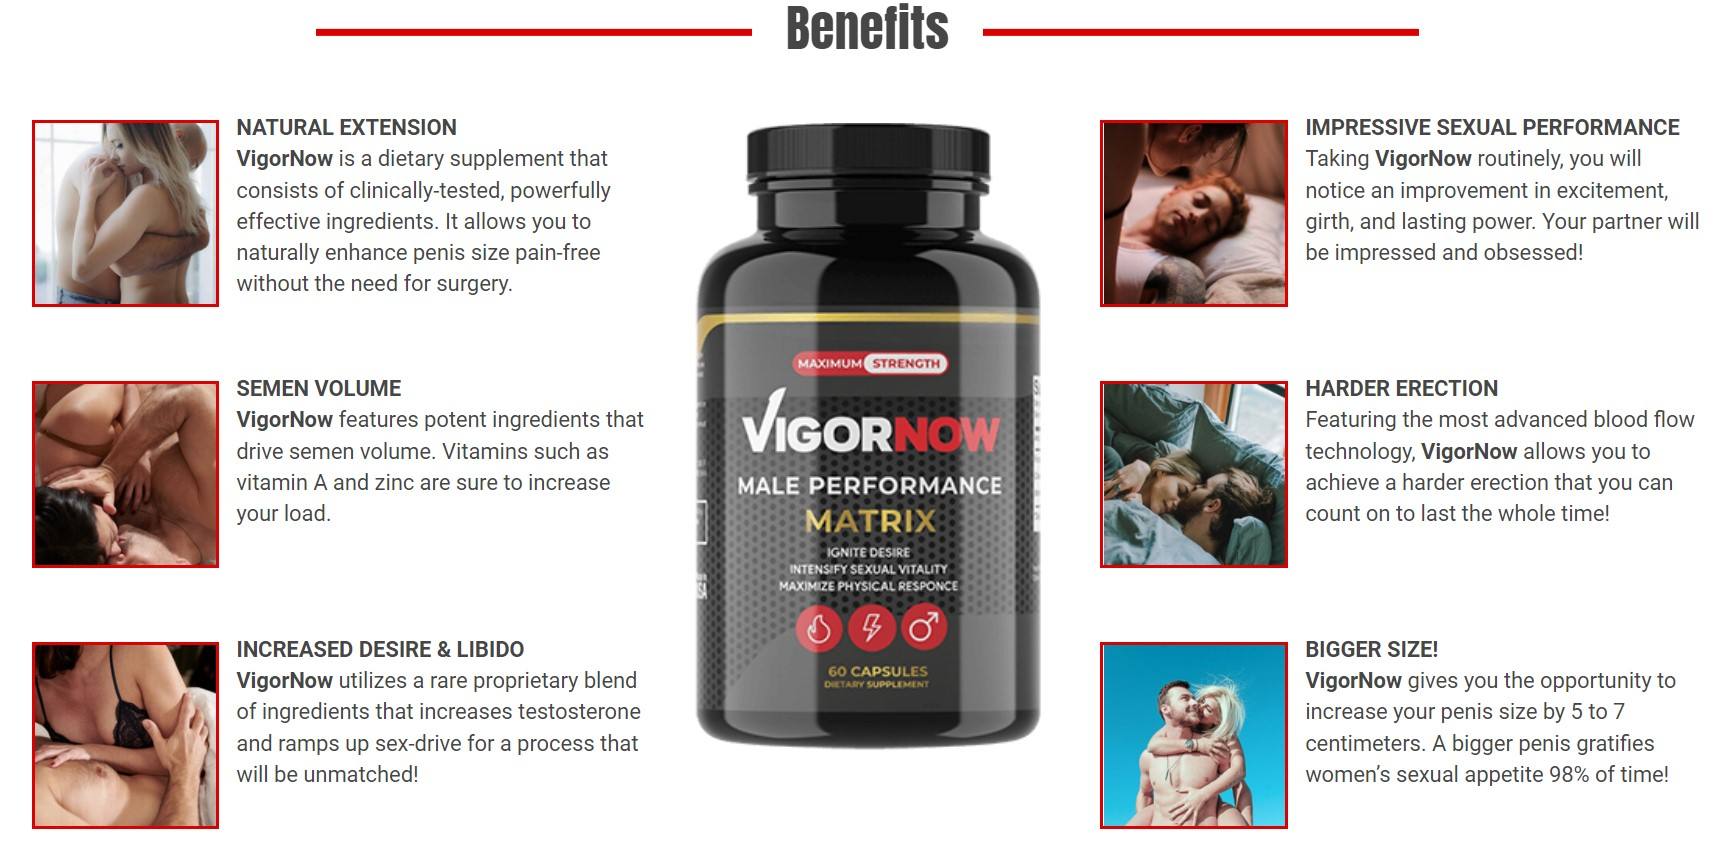 VigorNow benefits